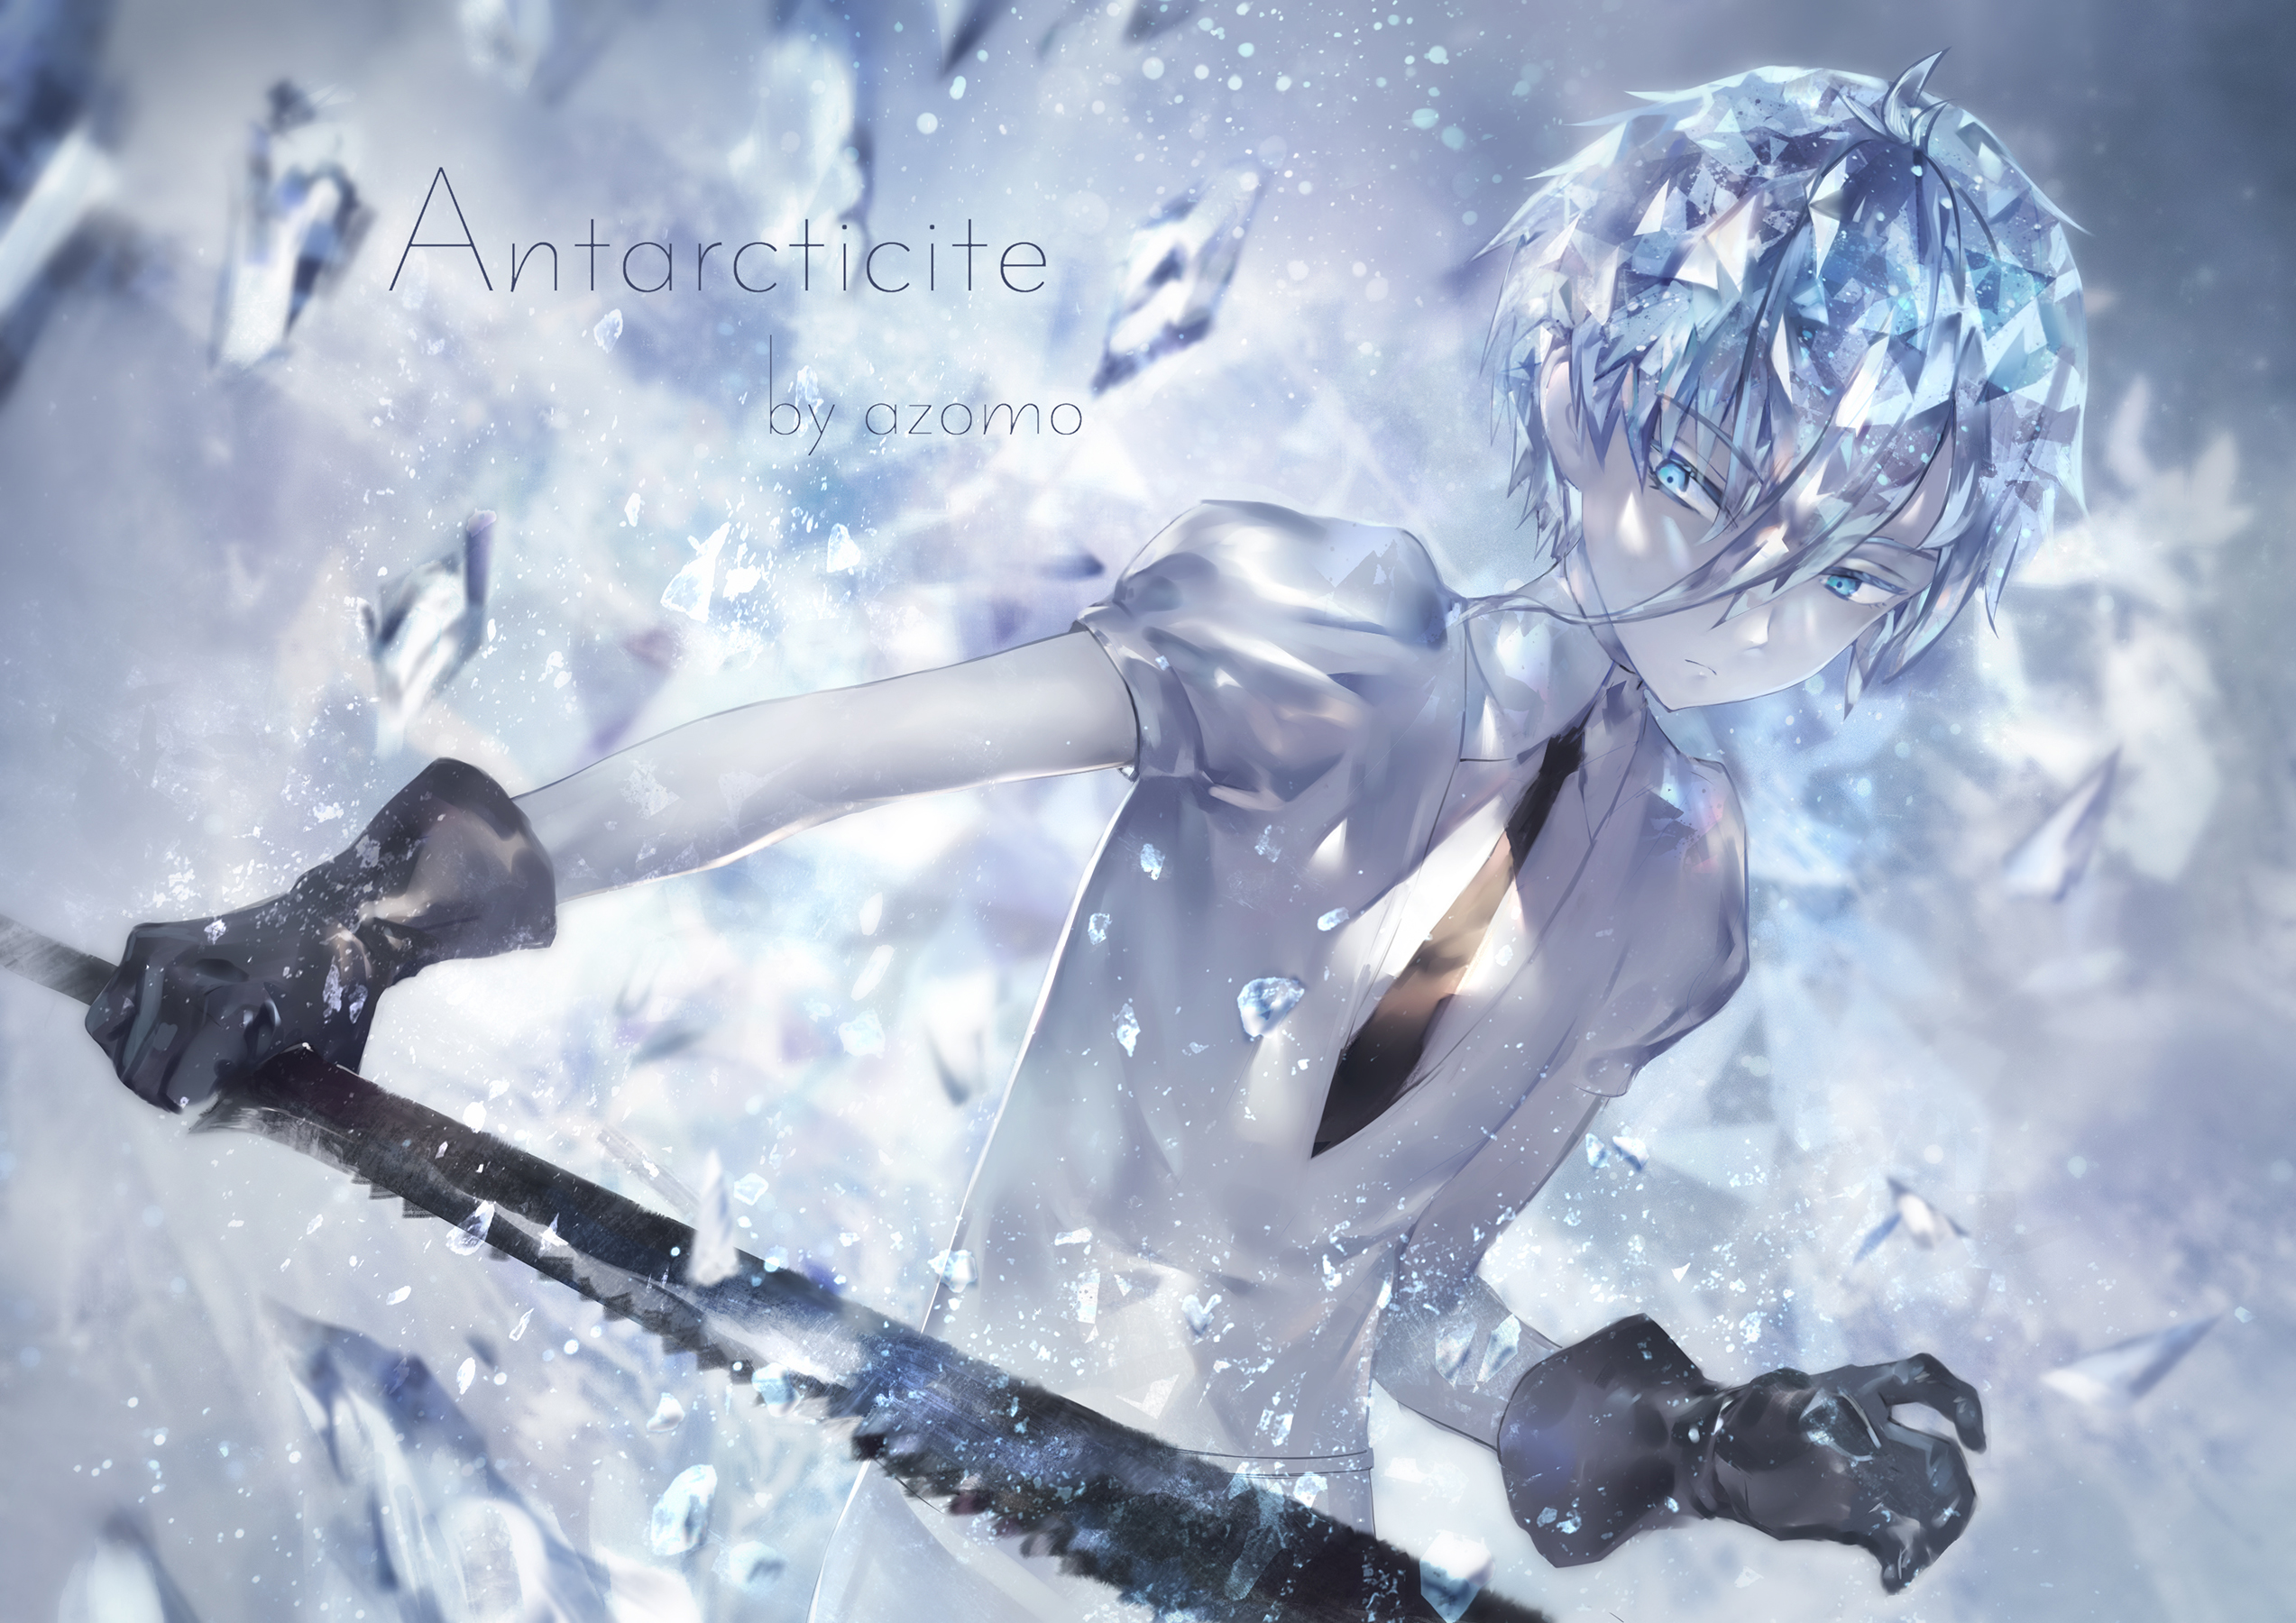 Antarcticite by azomo